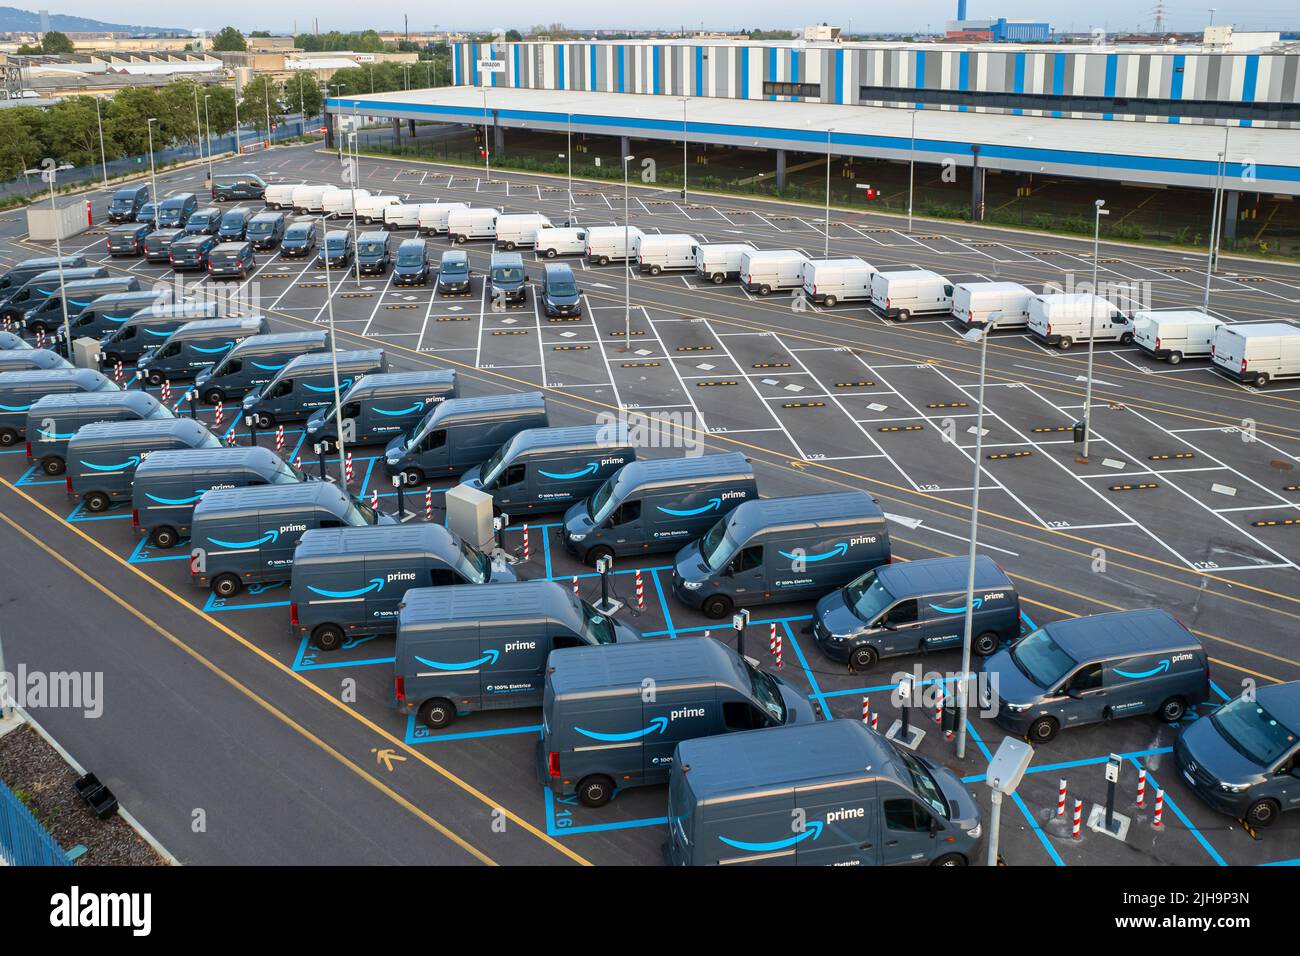 Vista superior de las furgonetas eléctricas de Amazon Prime, estacionadas en el centro logístico de Amazon. Turín, Italia - Julio de 2022 Foto de stock